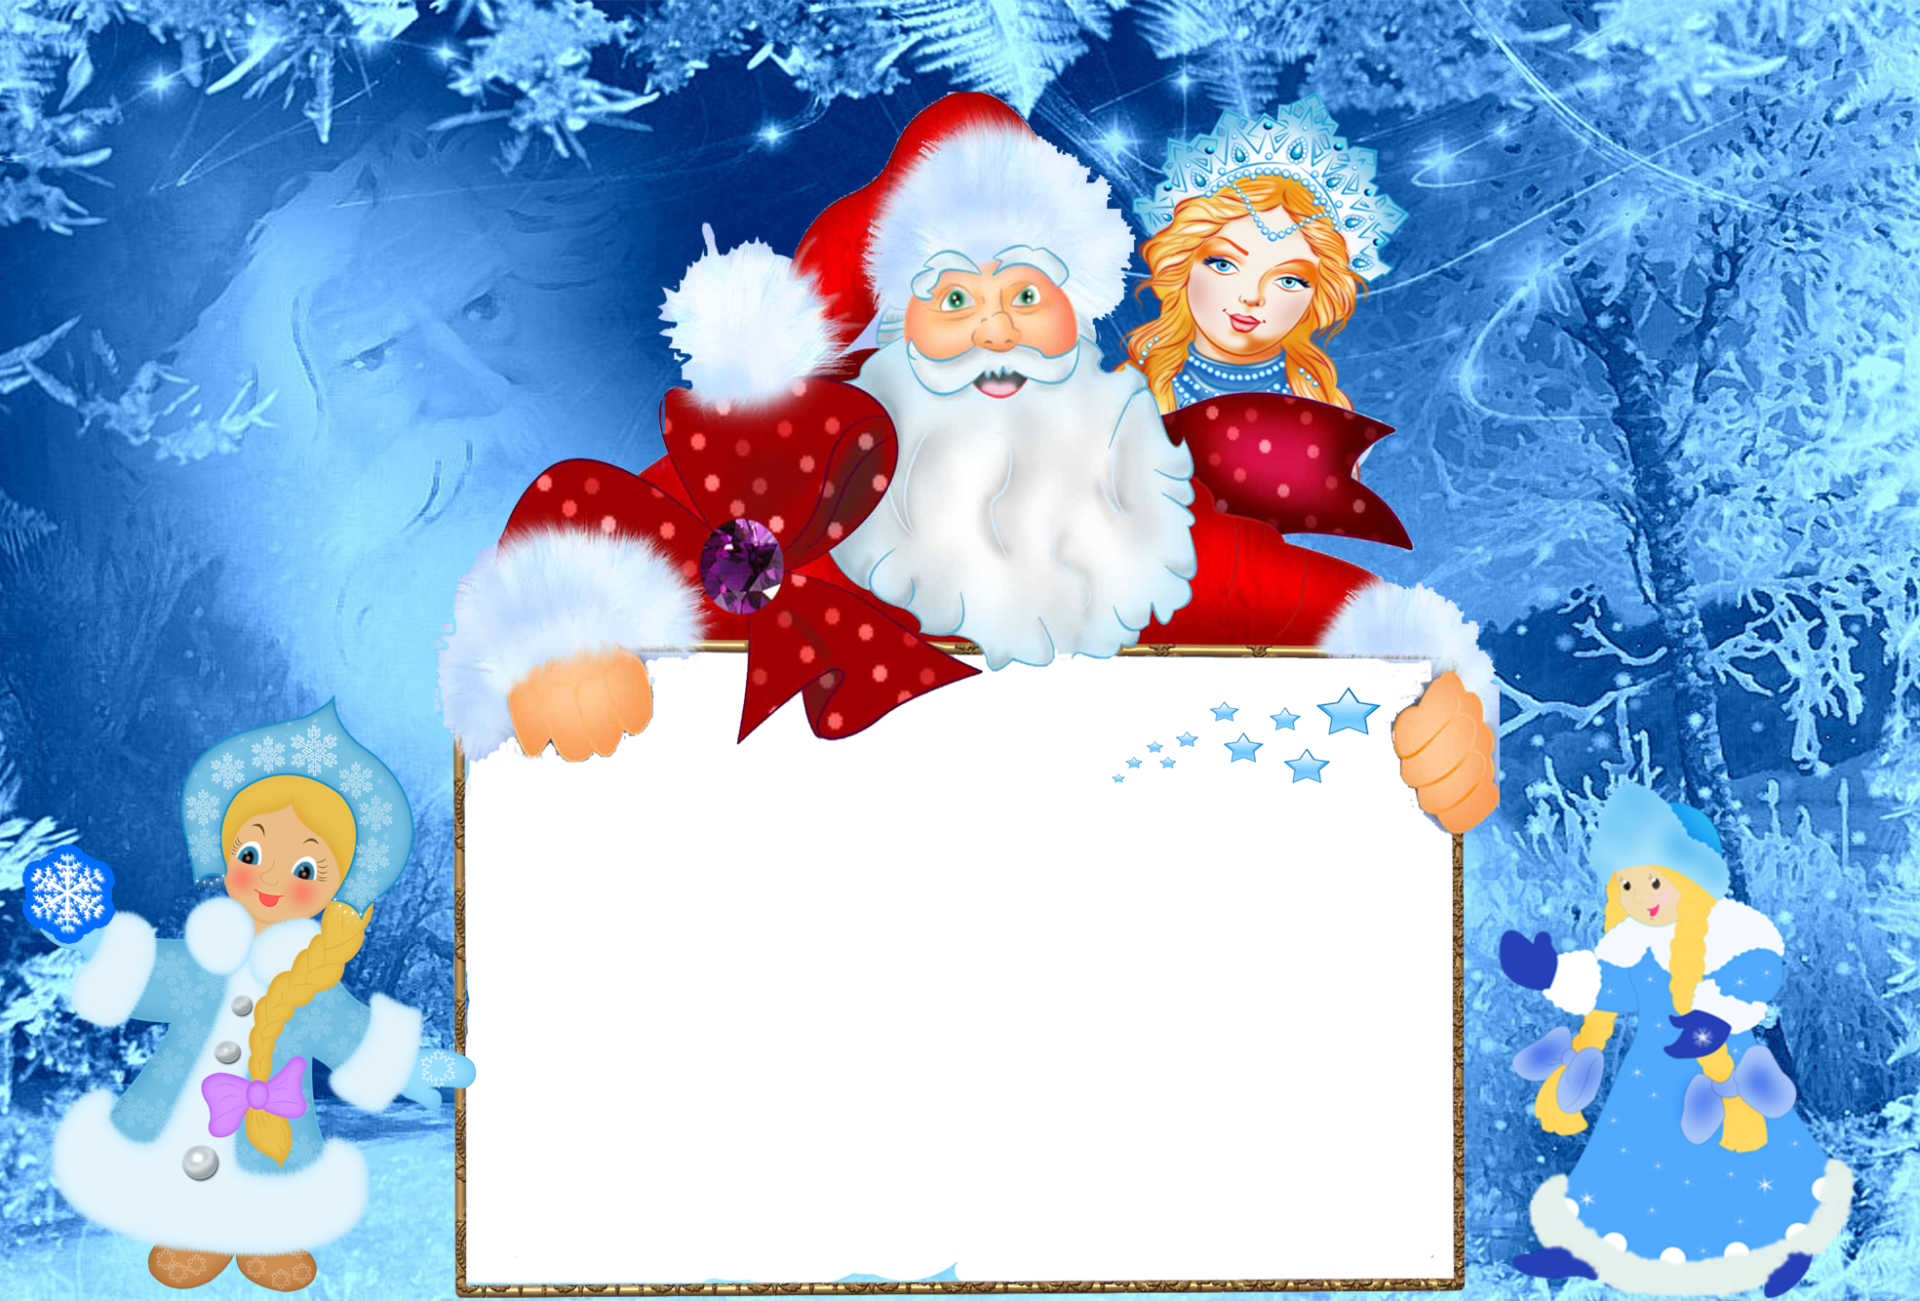 Шаблон объявления на новый год. Новогодняя рамка. Новогоднее объявление шаблон. Приглашение на елку от Деда Мороза и Снегурочки. Поздравление от Деда Морозаи Снгурочки.